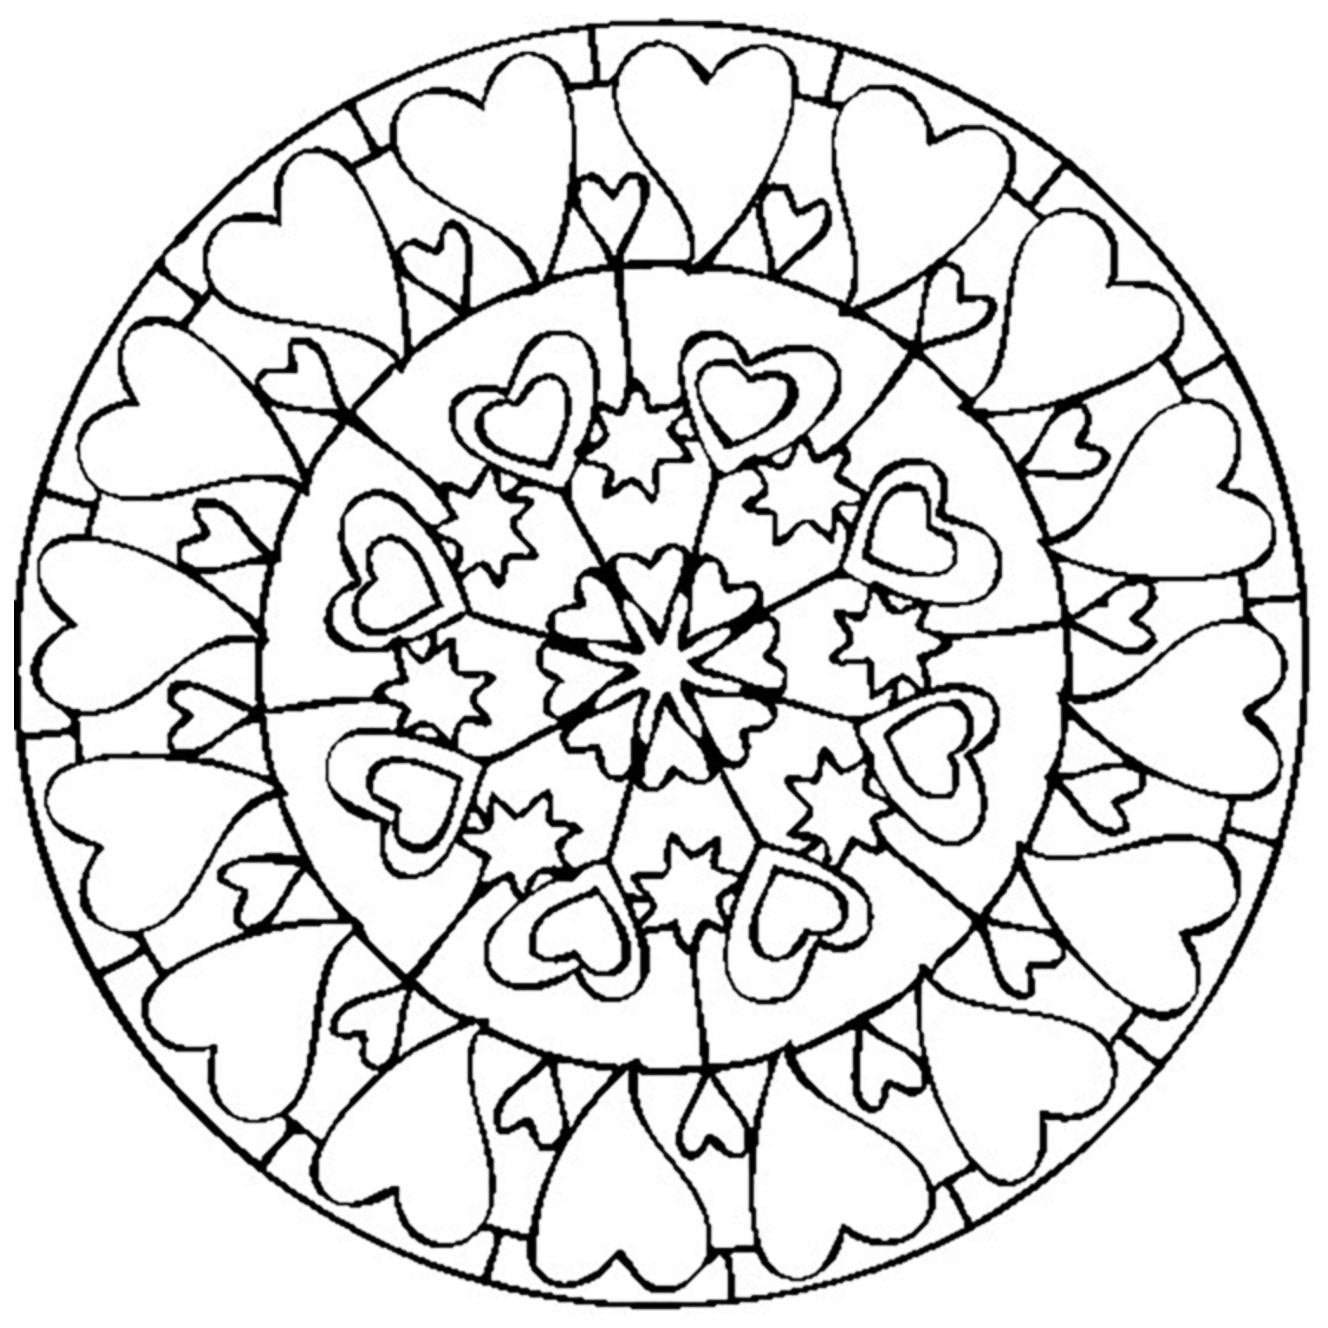 Mandala spécial Saint Valentin dessiné à la main, avec de jolis coeurs de tailles diverses et variées.